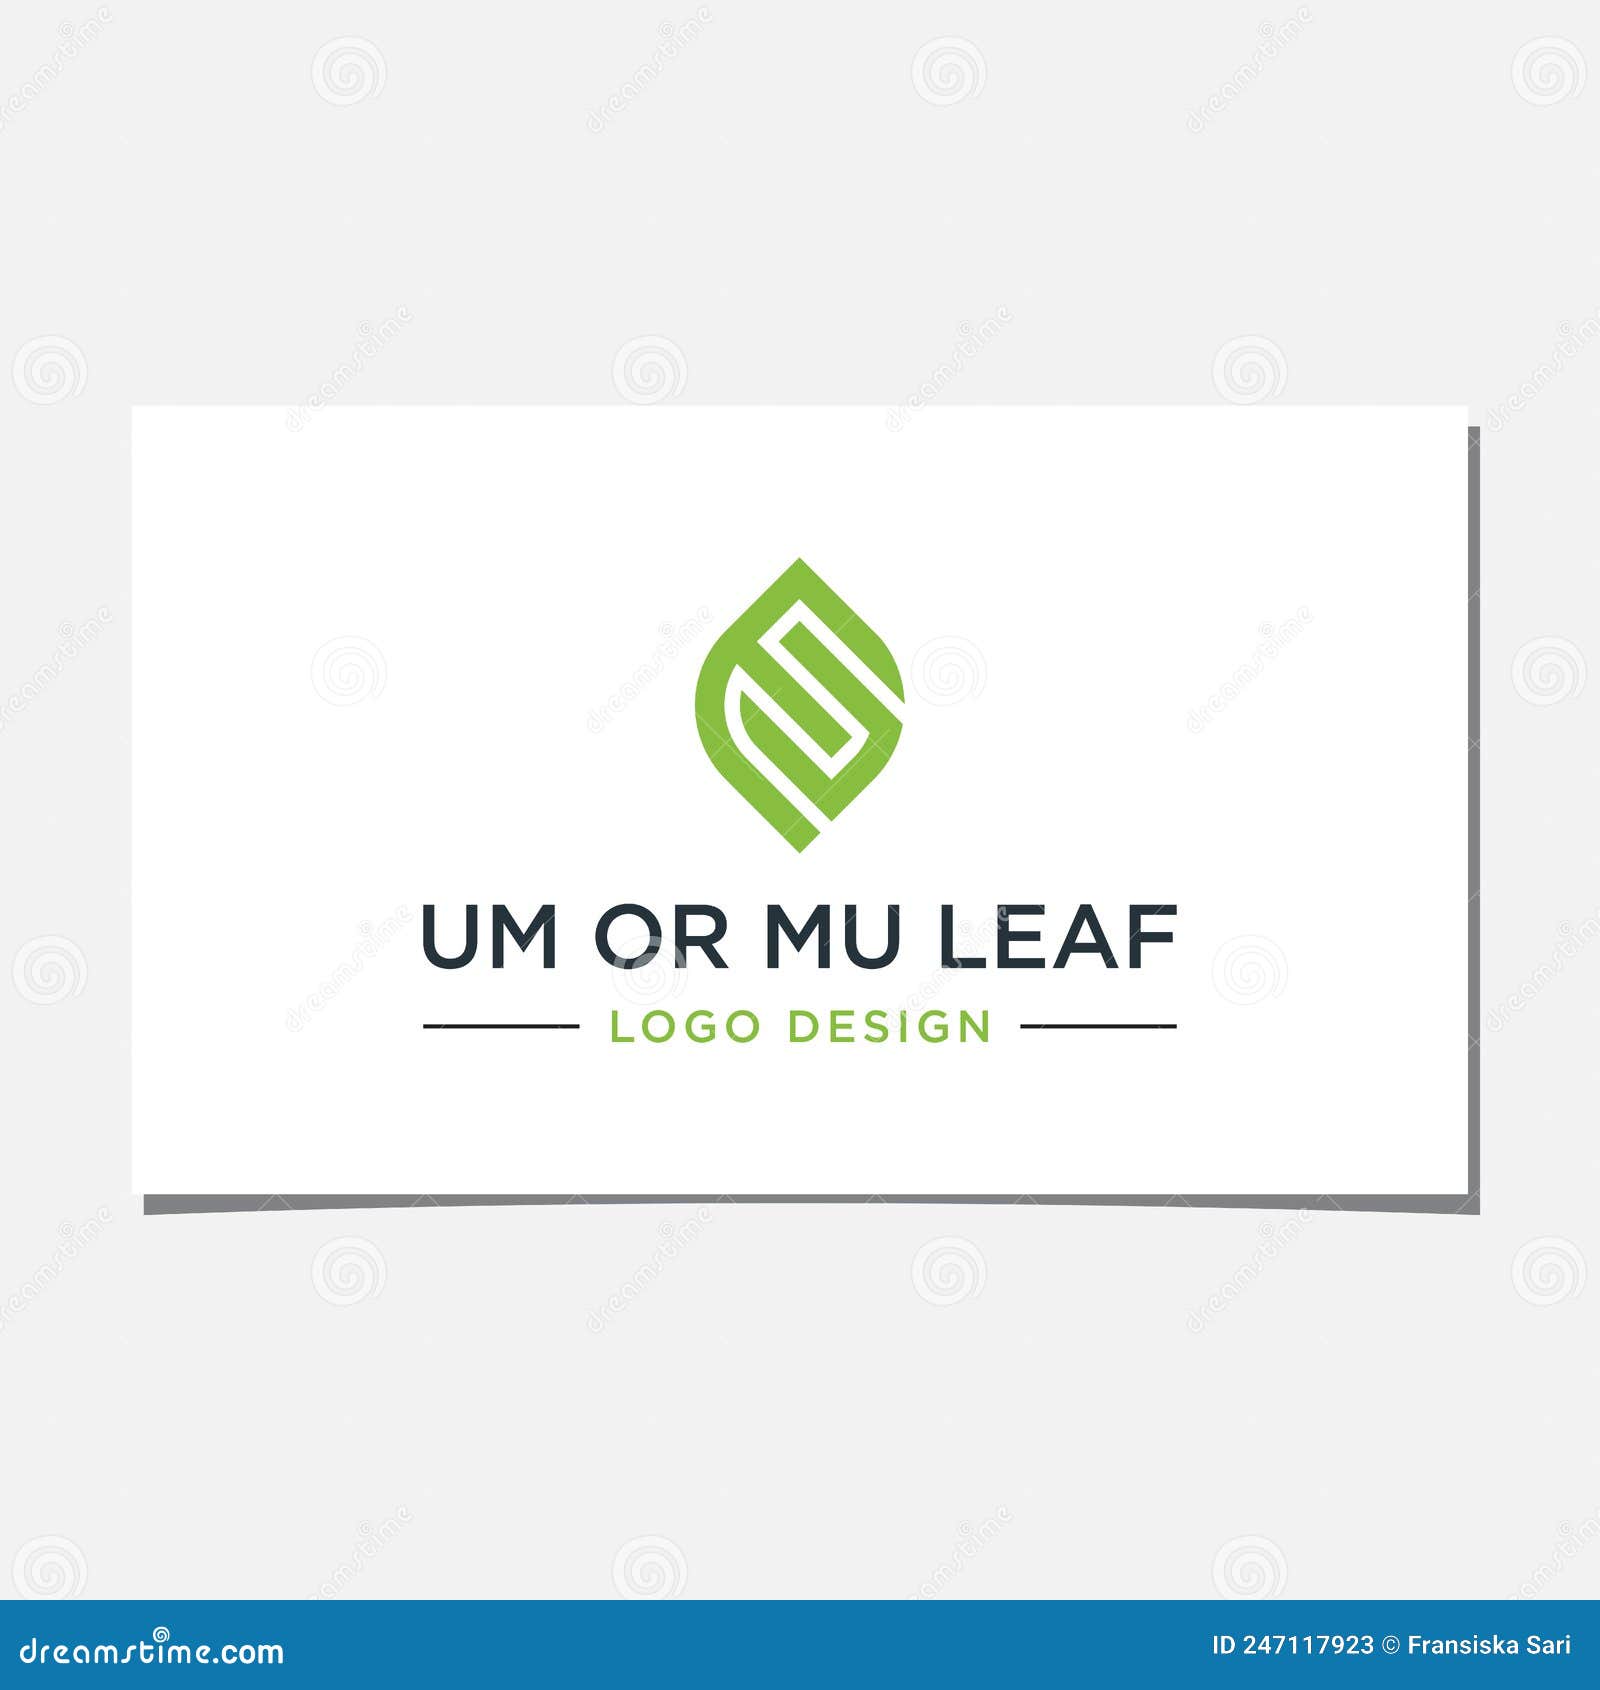 um or mu leaf logo